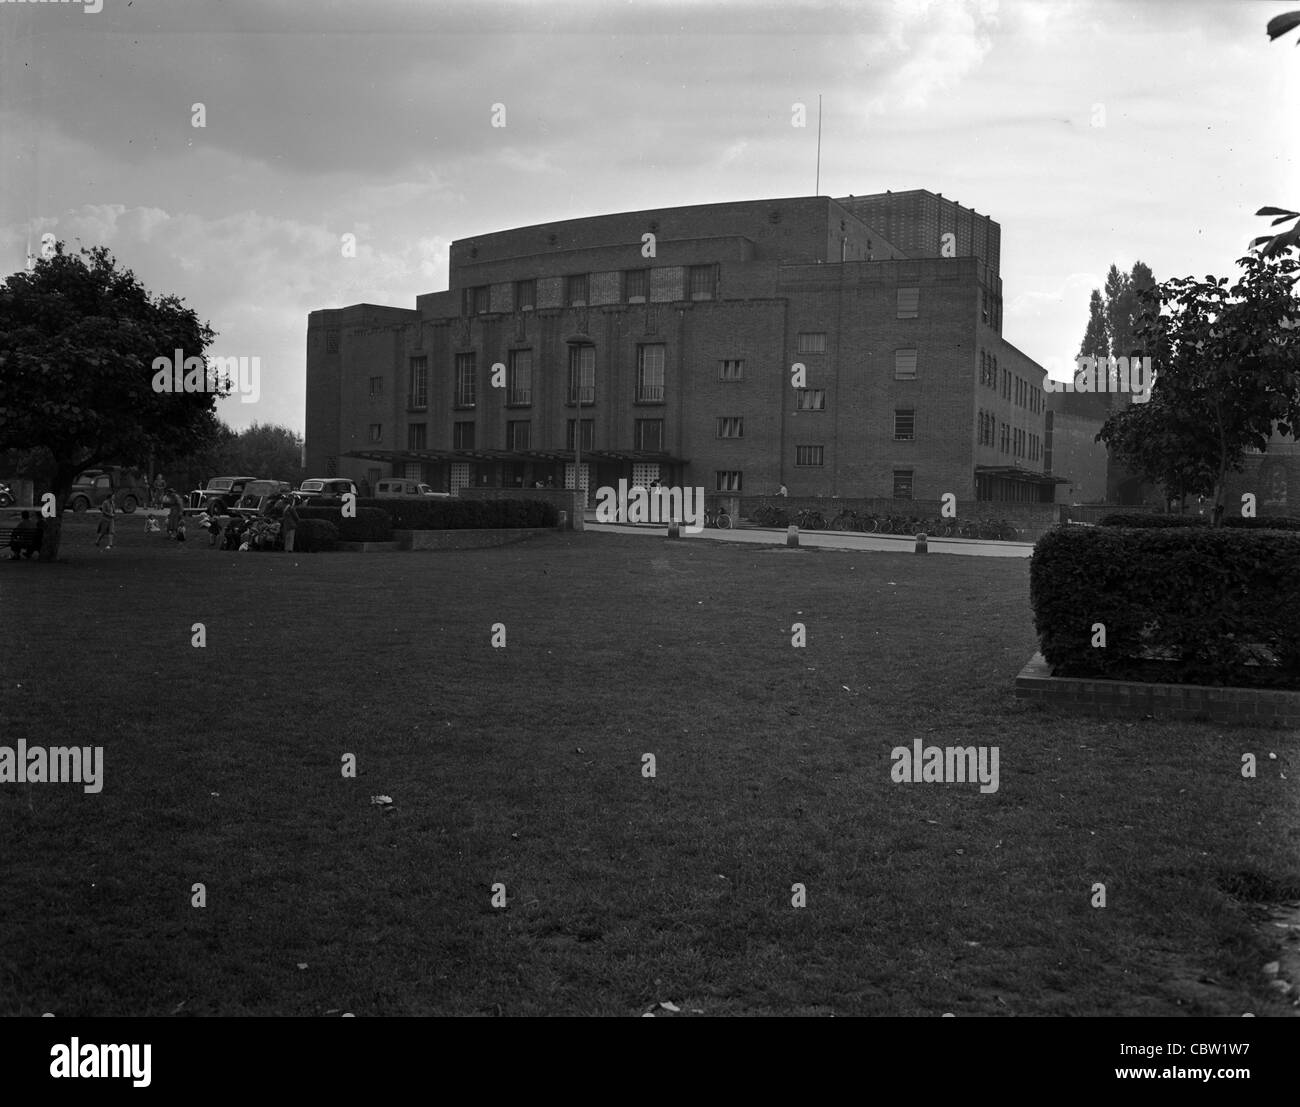 Fotos von Europa und England während des zweiten Weltkriegs. Dies sind die persönlichen Fotos eines US-Armee-Fotografen. Stockfoto